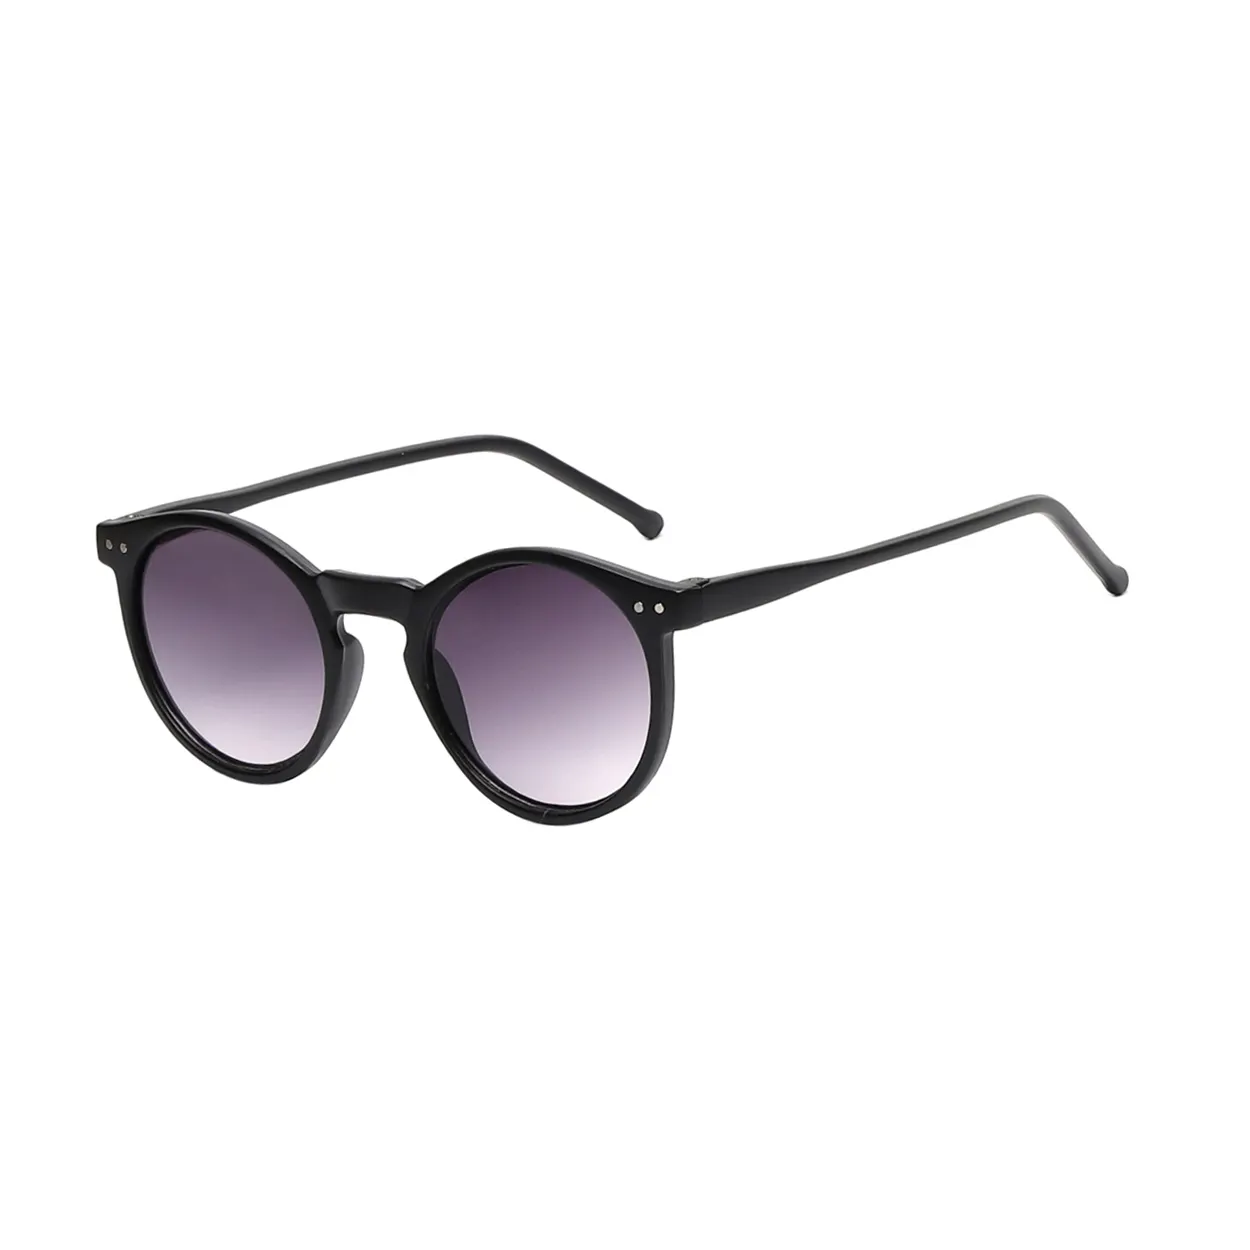 Beliebte polarisierte Sonnenbrille Damen Trend Vintage runde Sonnenbrille weibliche Brillen Shades UV400 PC Unisex Erwachsene Multi WSP23172